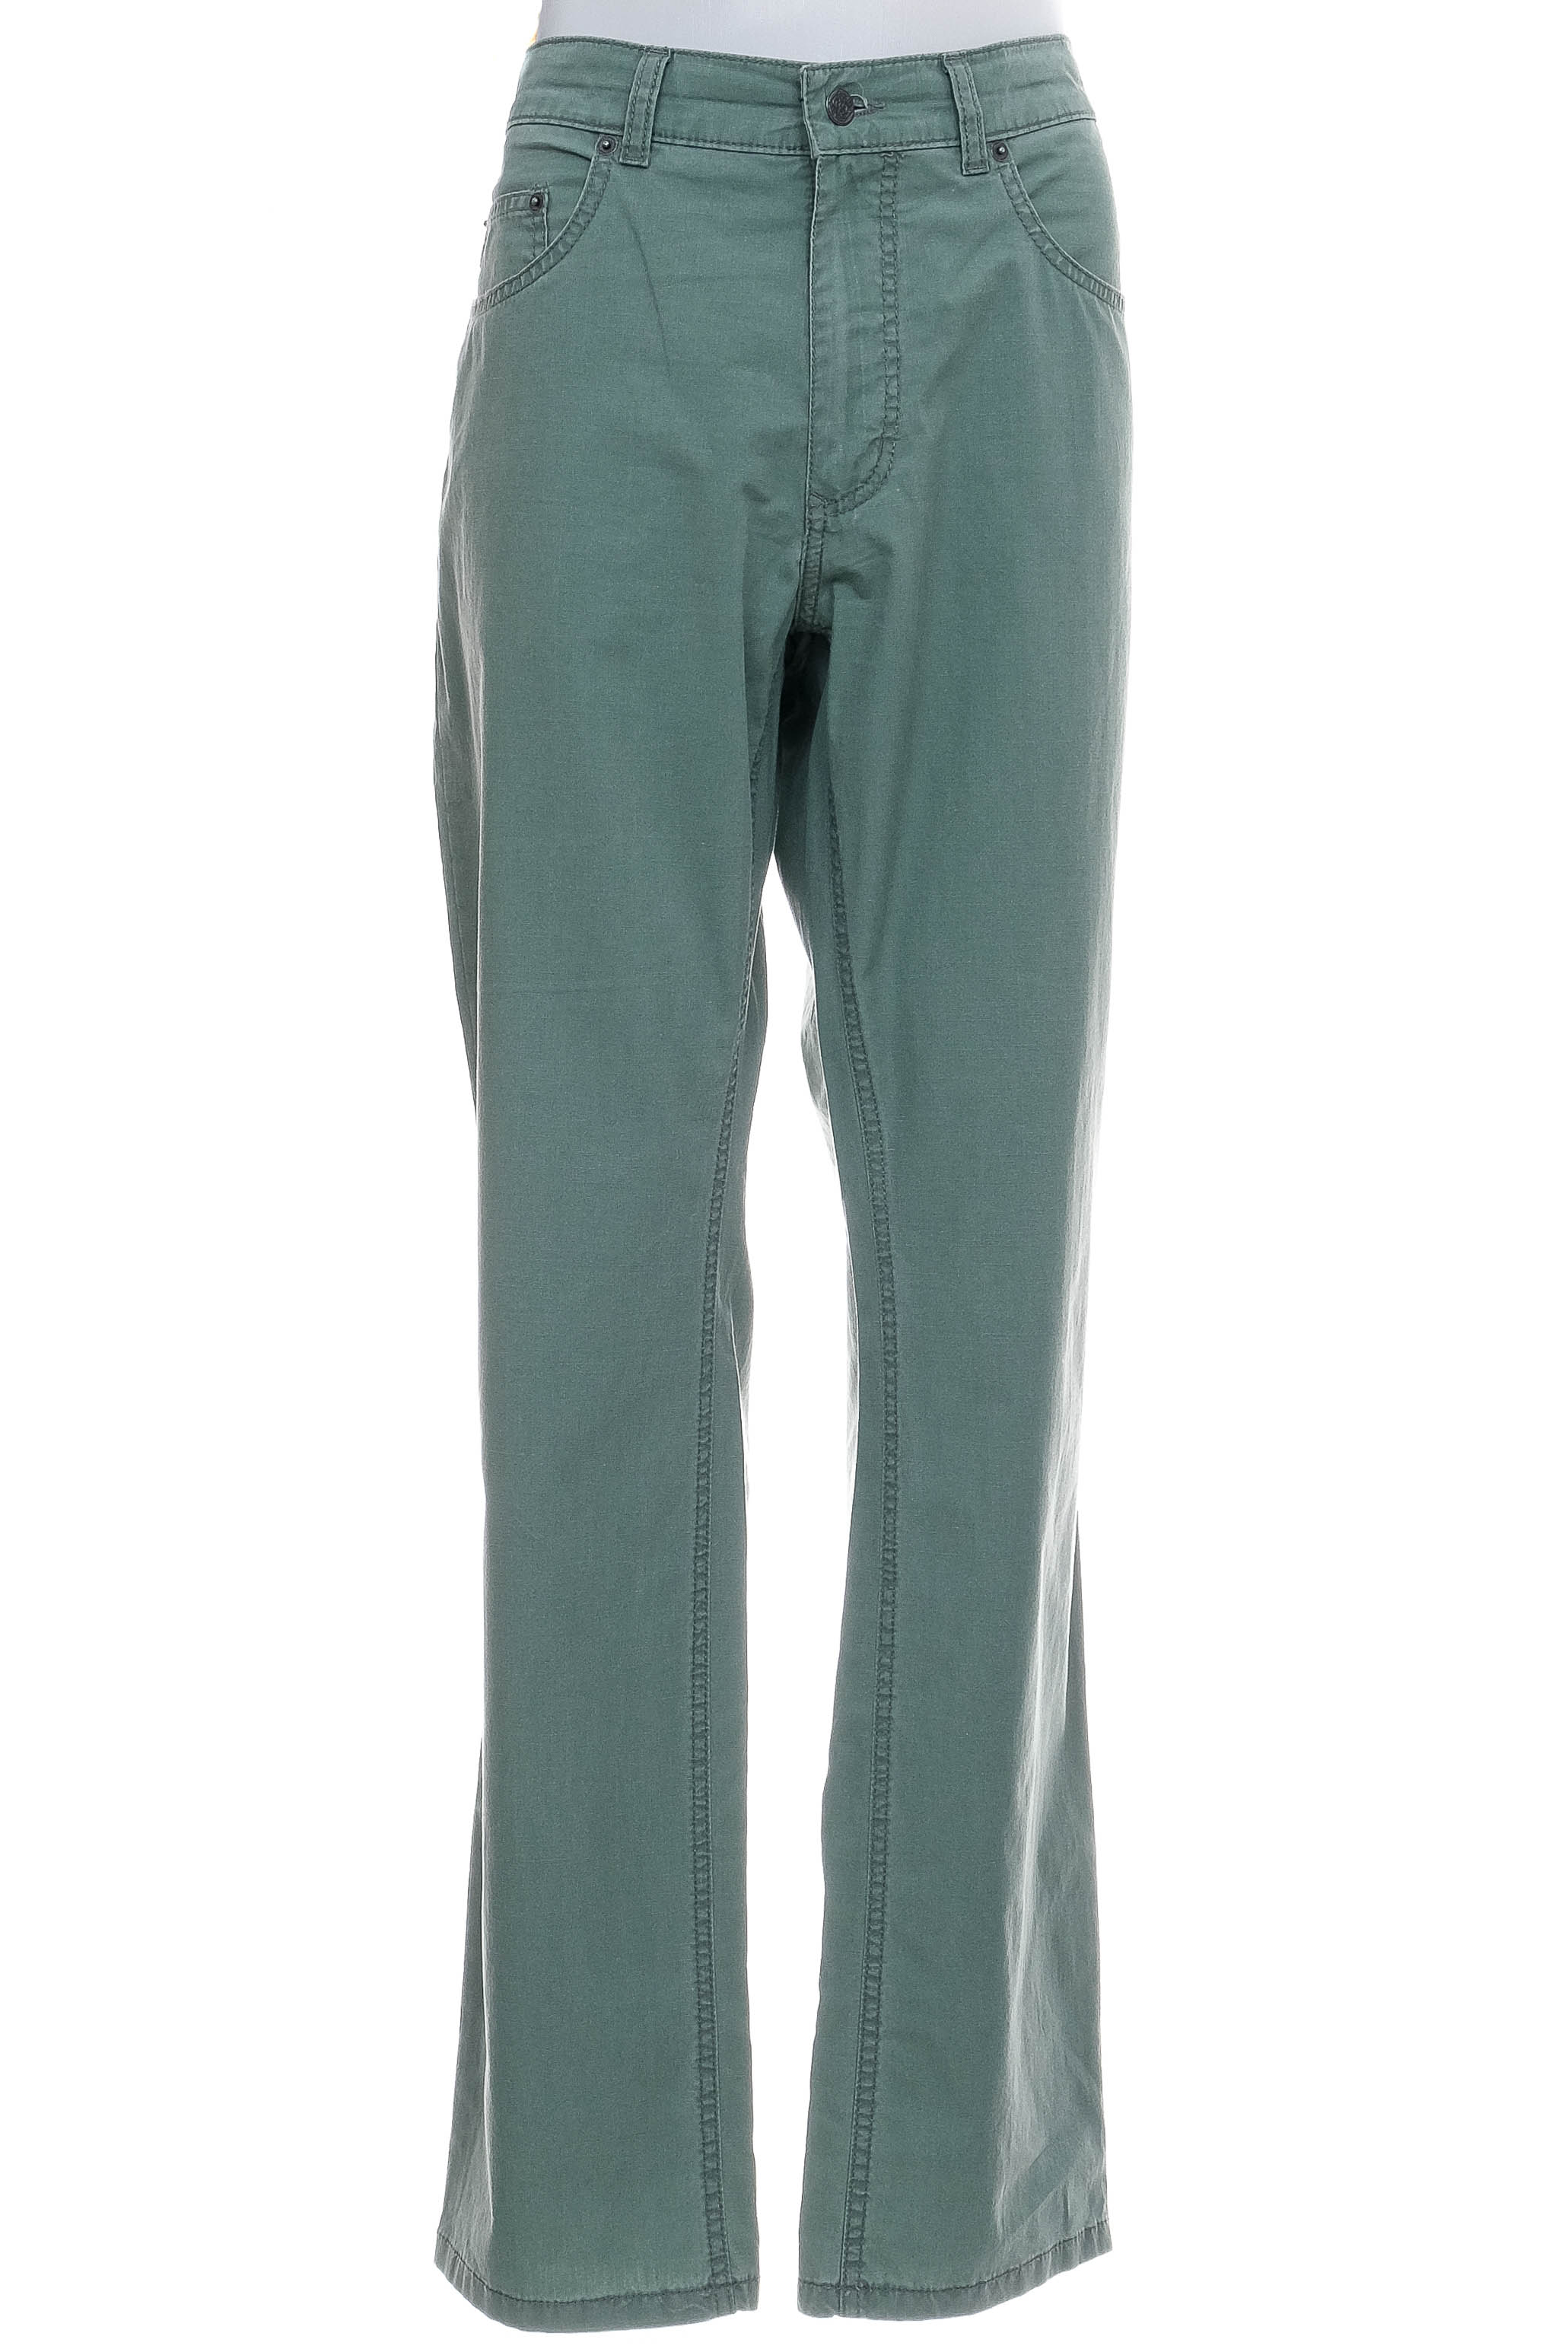 Men's trousers - Pioneer - 0